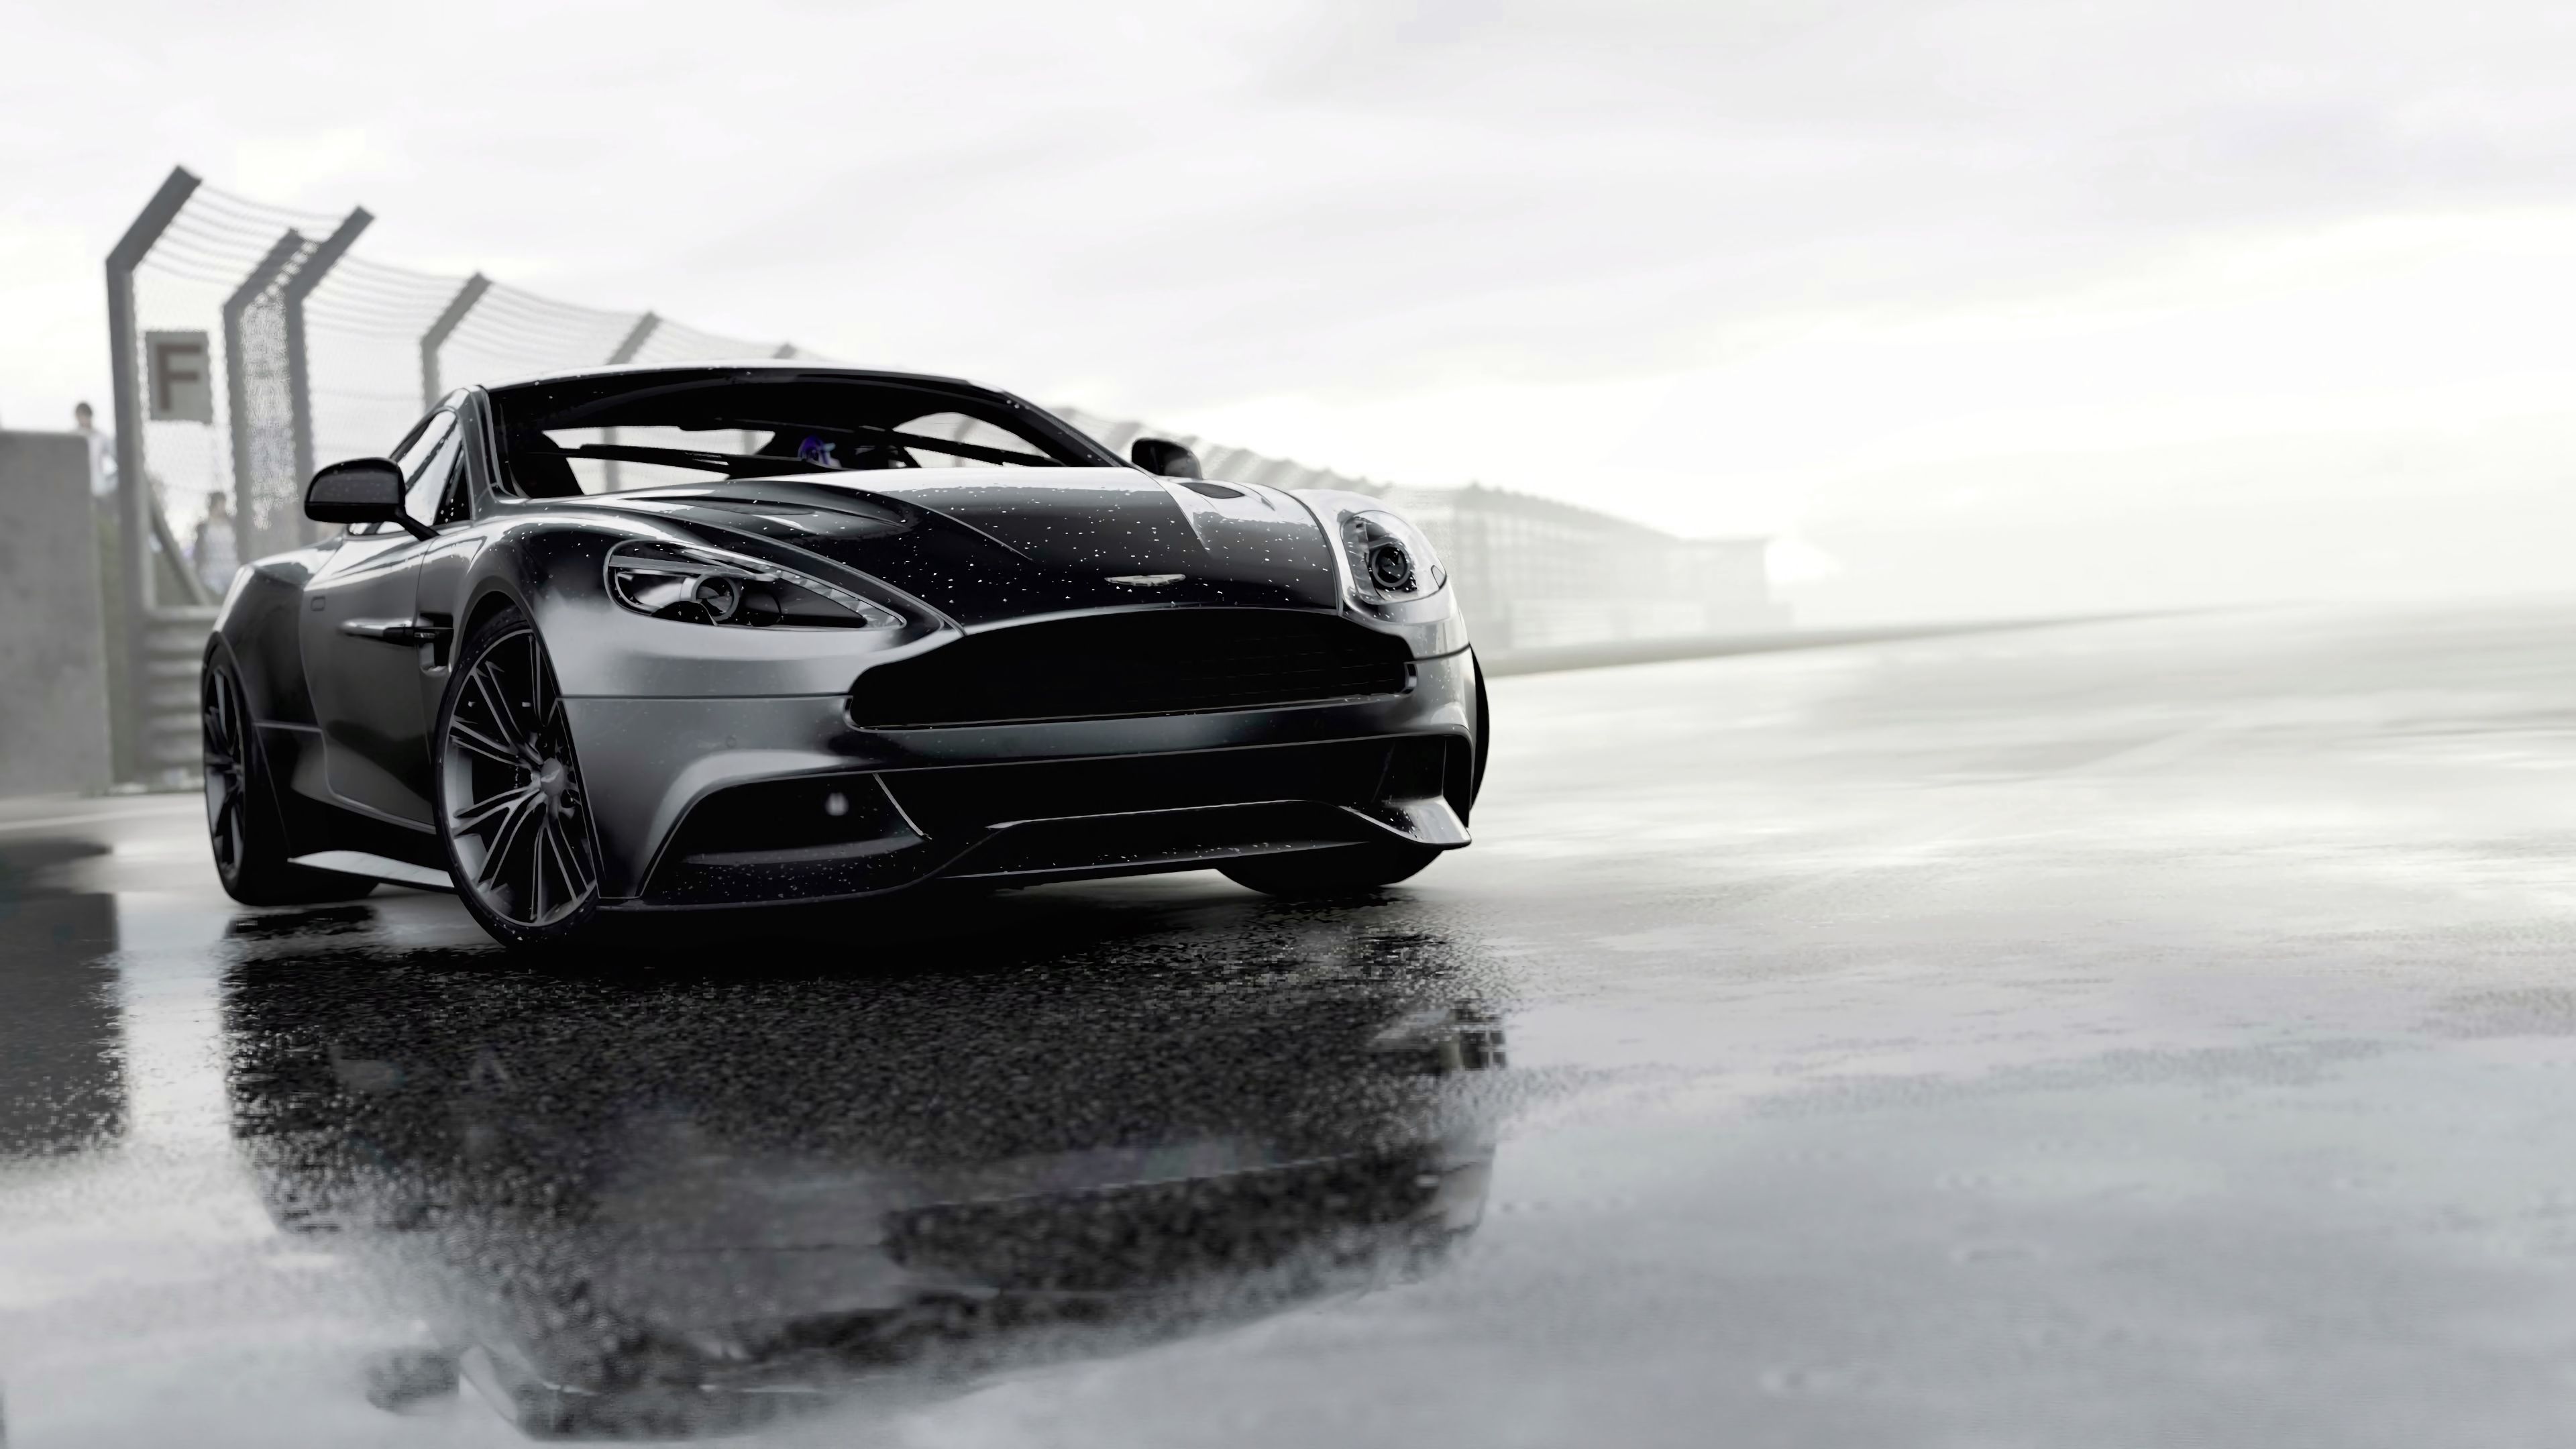 Télécharger des fonds d'écran Aston Martin HD